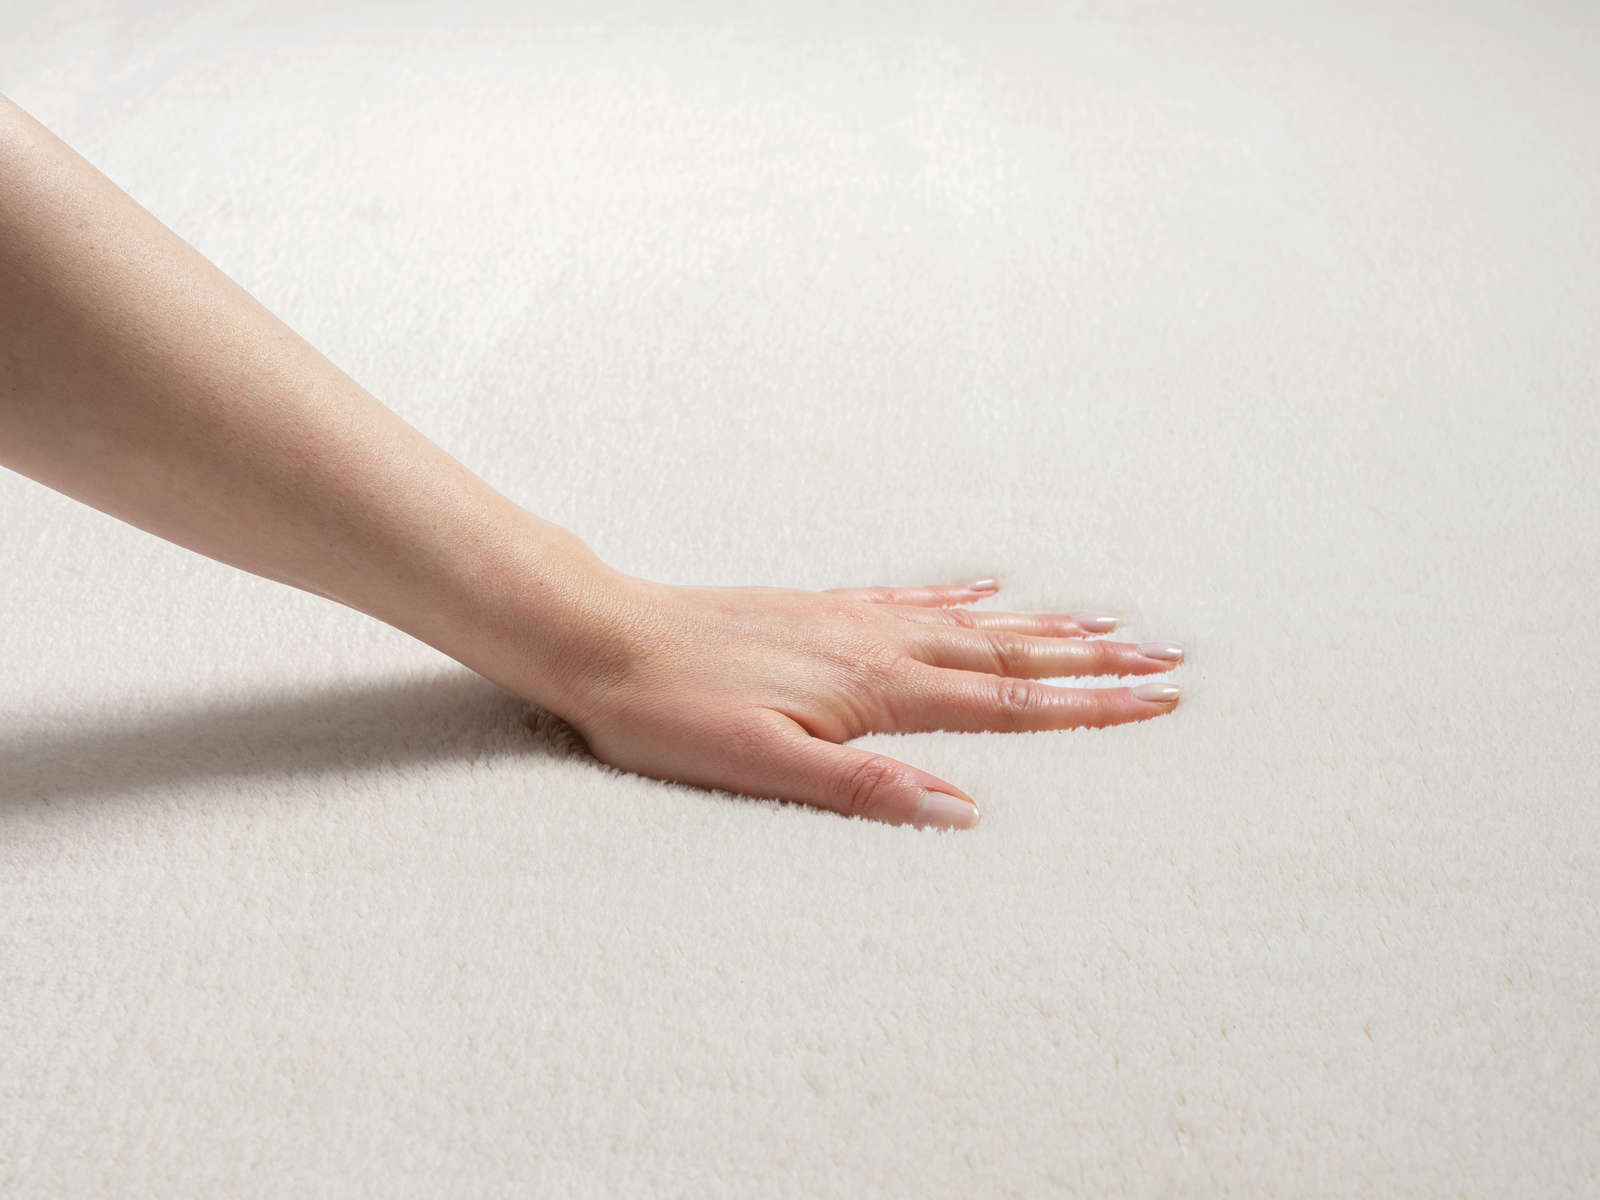             Fashionable high pile carpet in cream - 200 x 140 cm
        